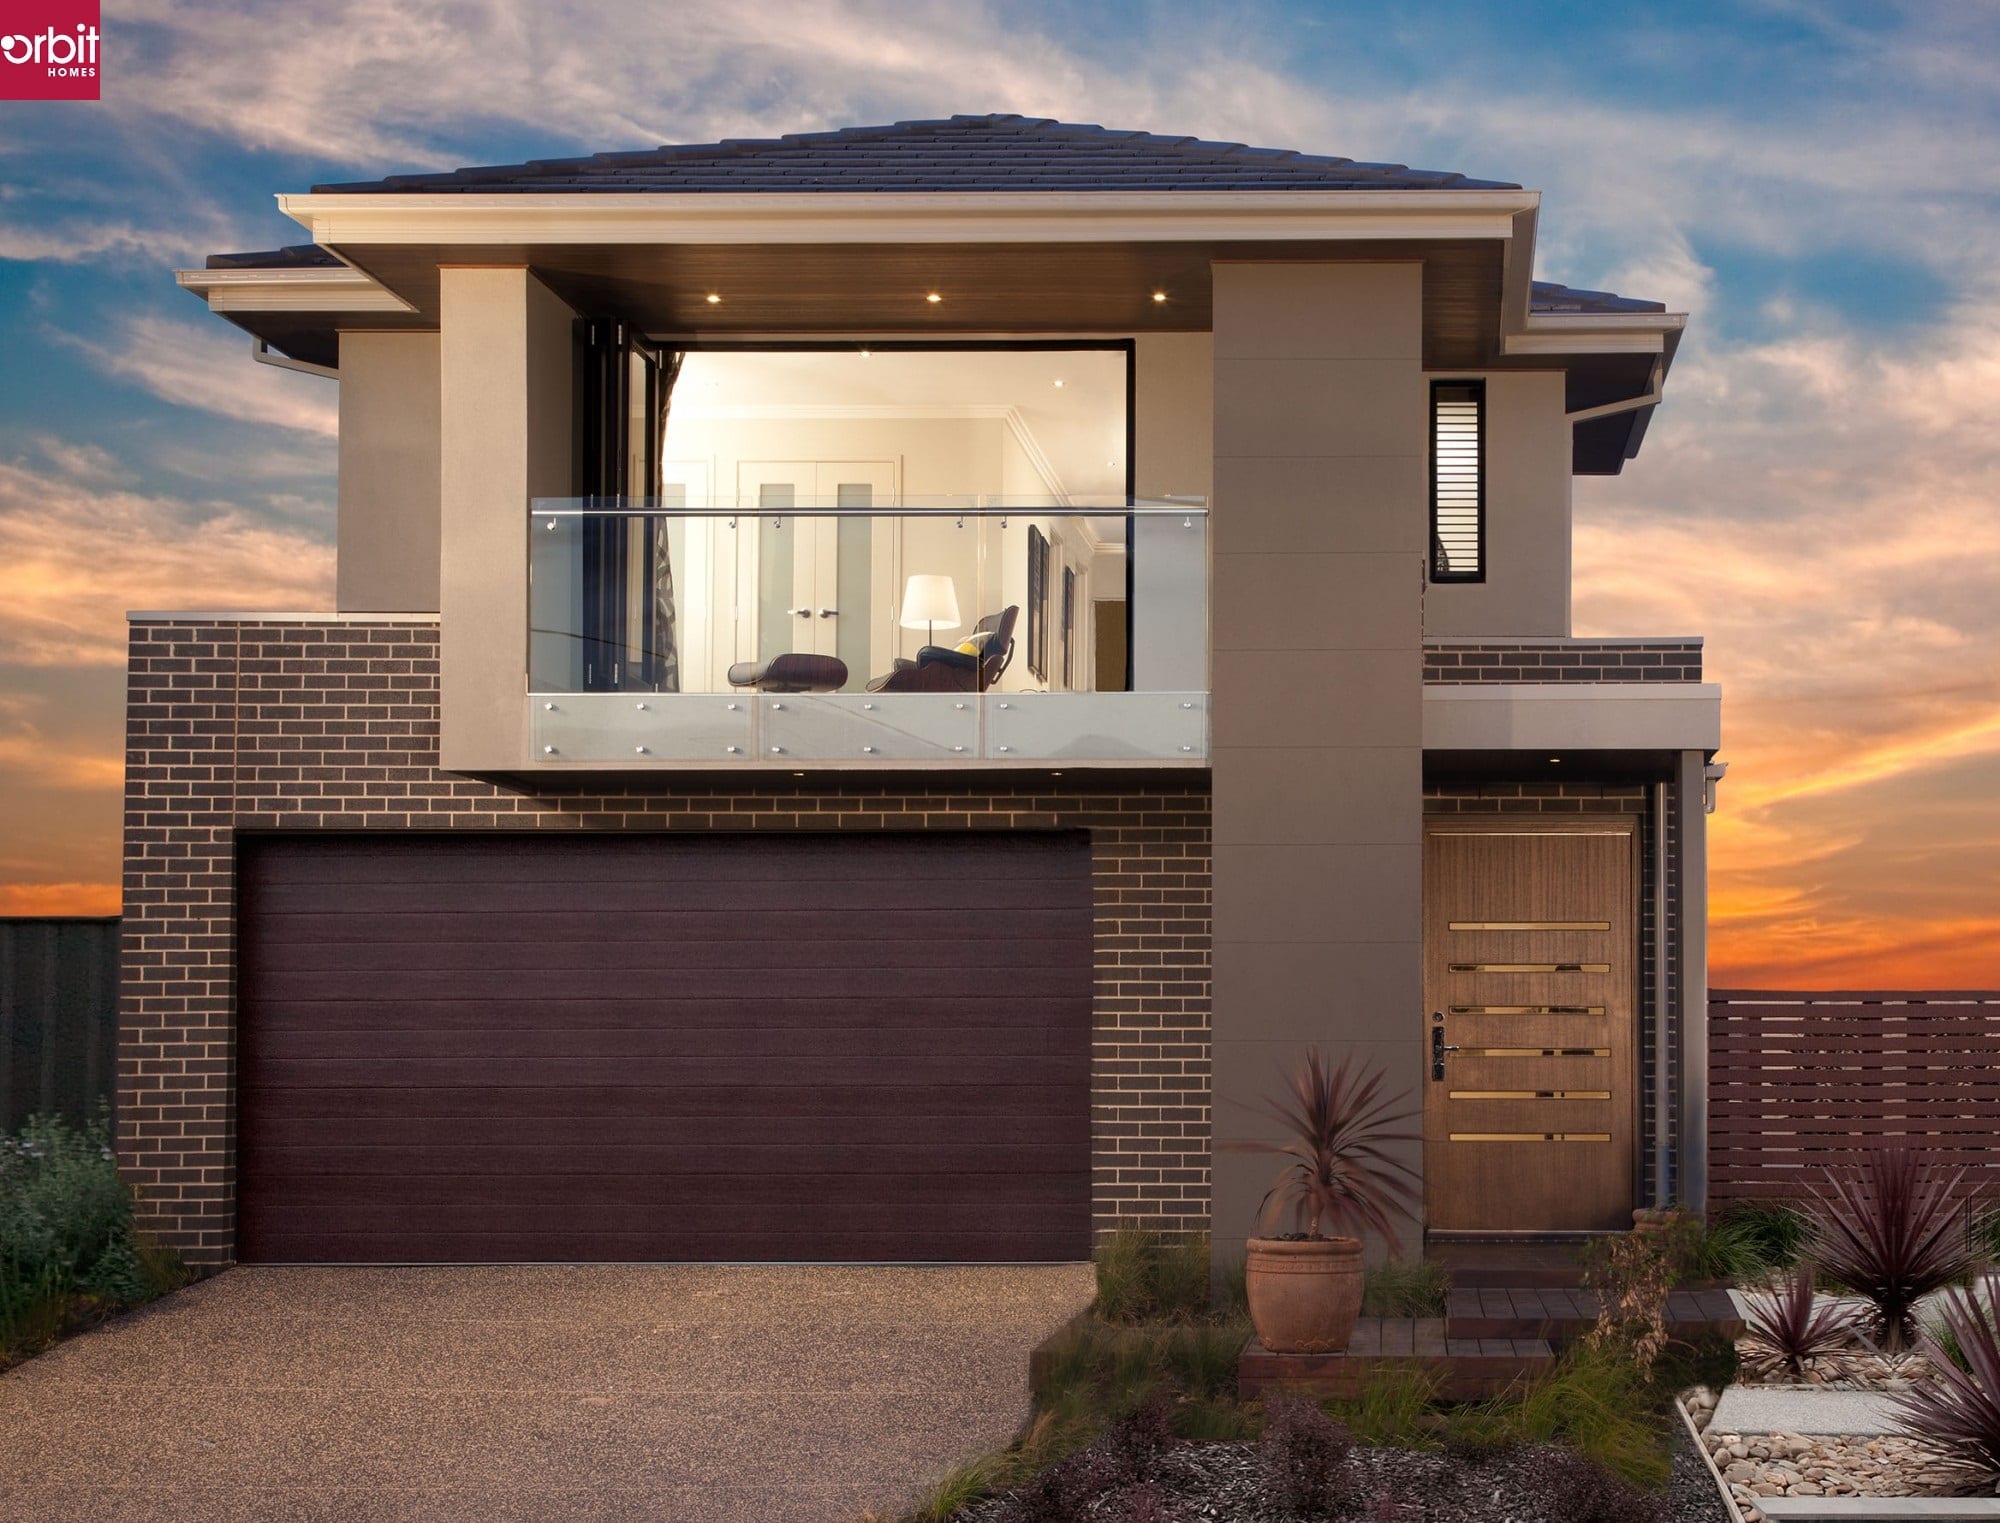 Orbit Homes - New Home Builder Australia